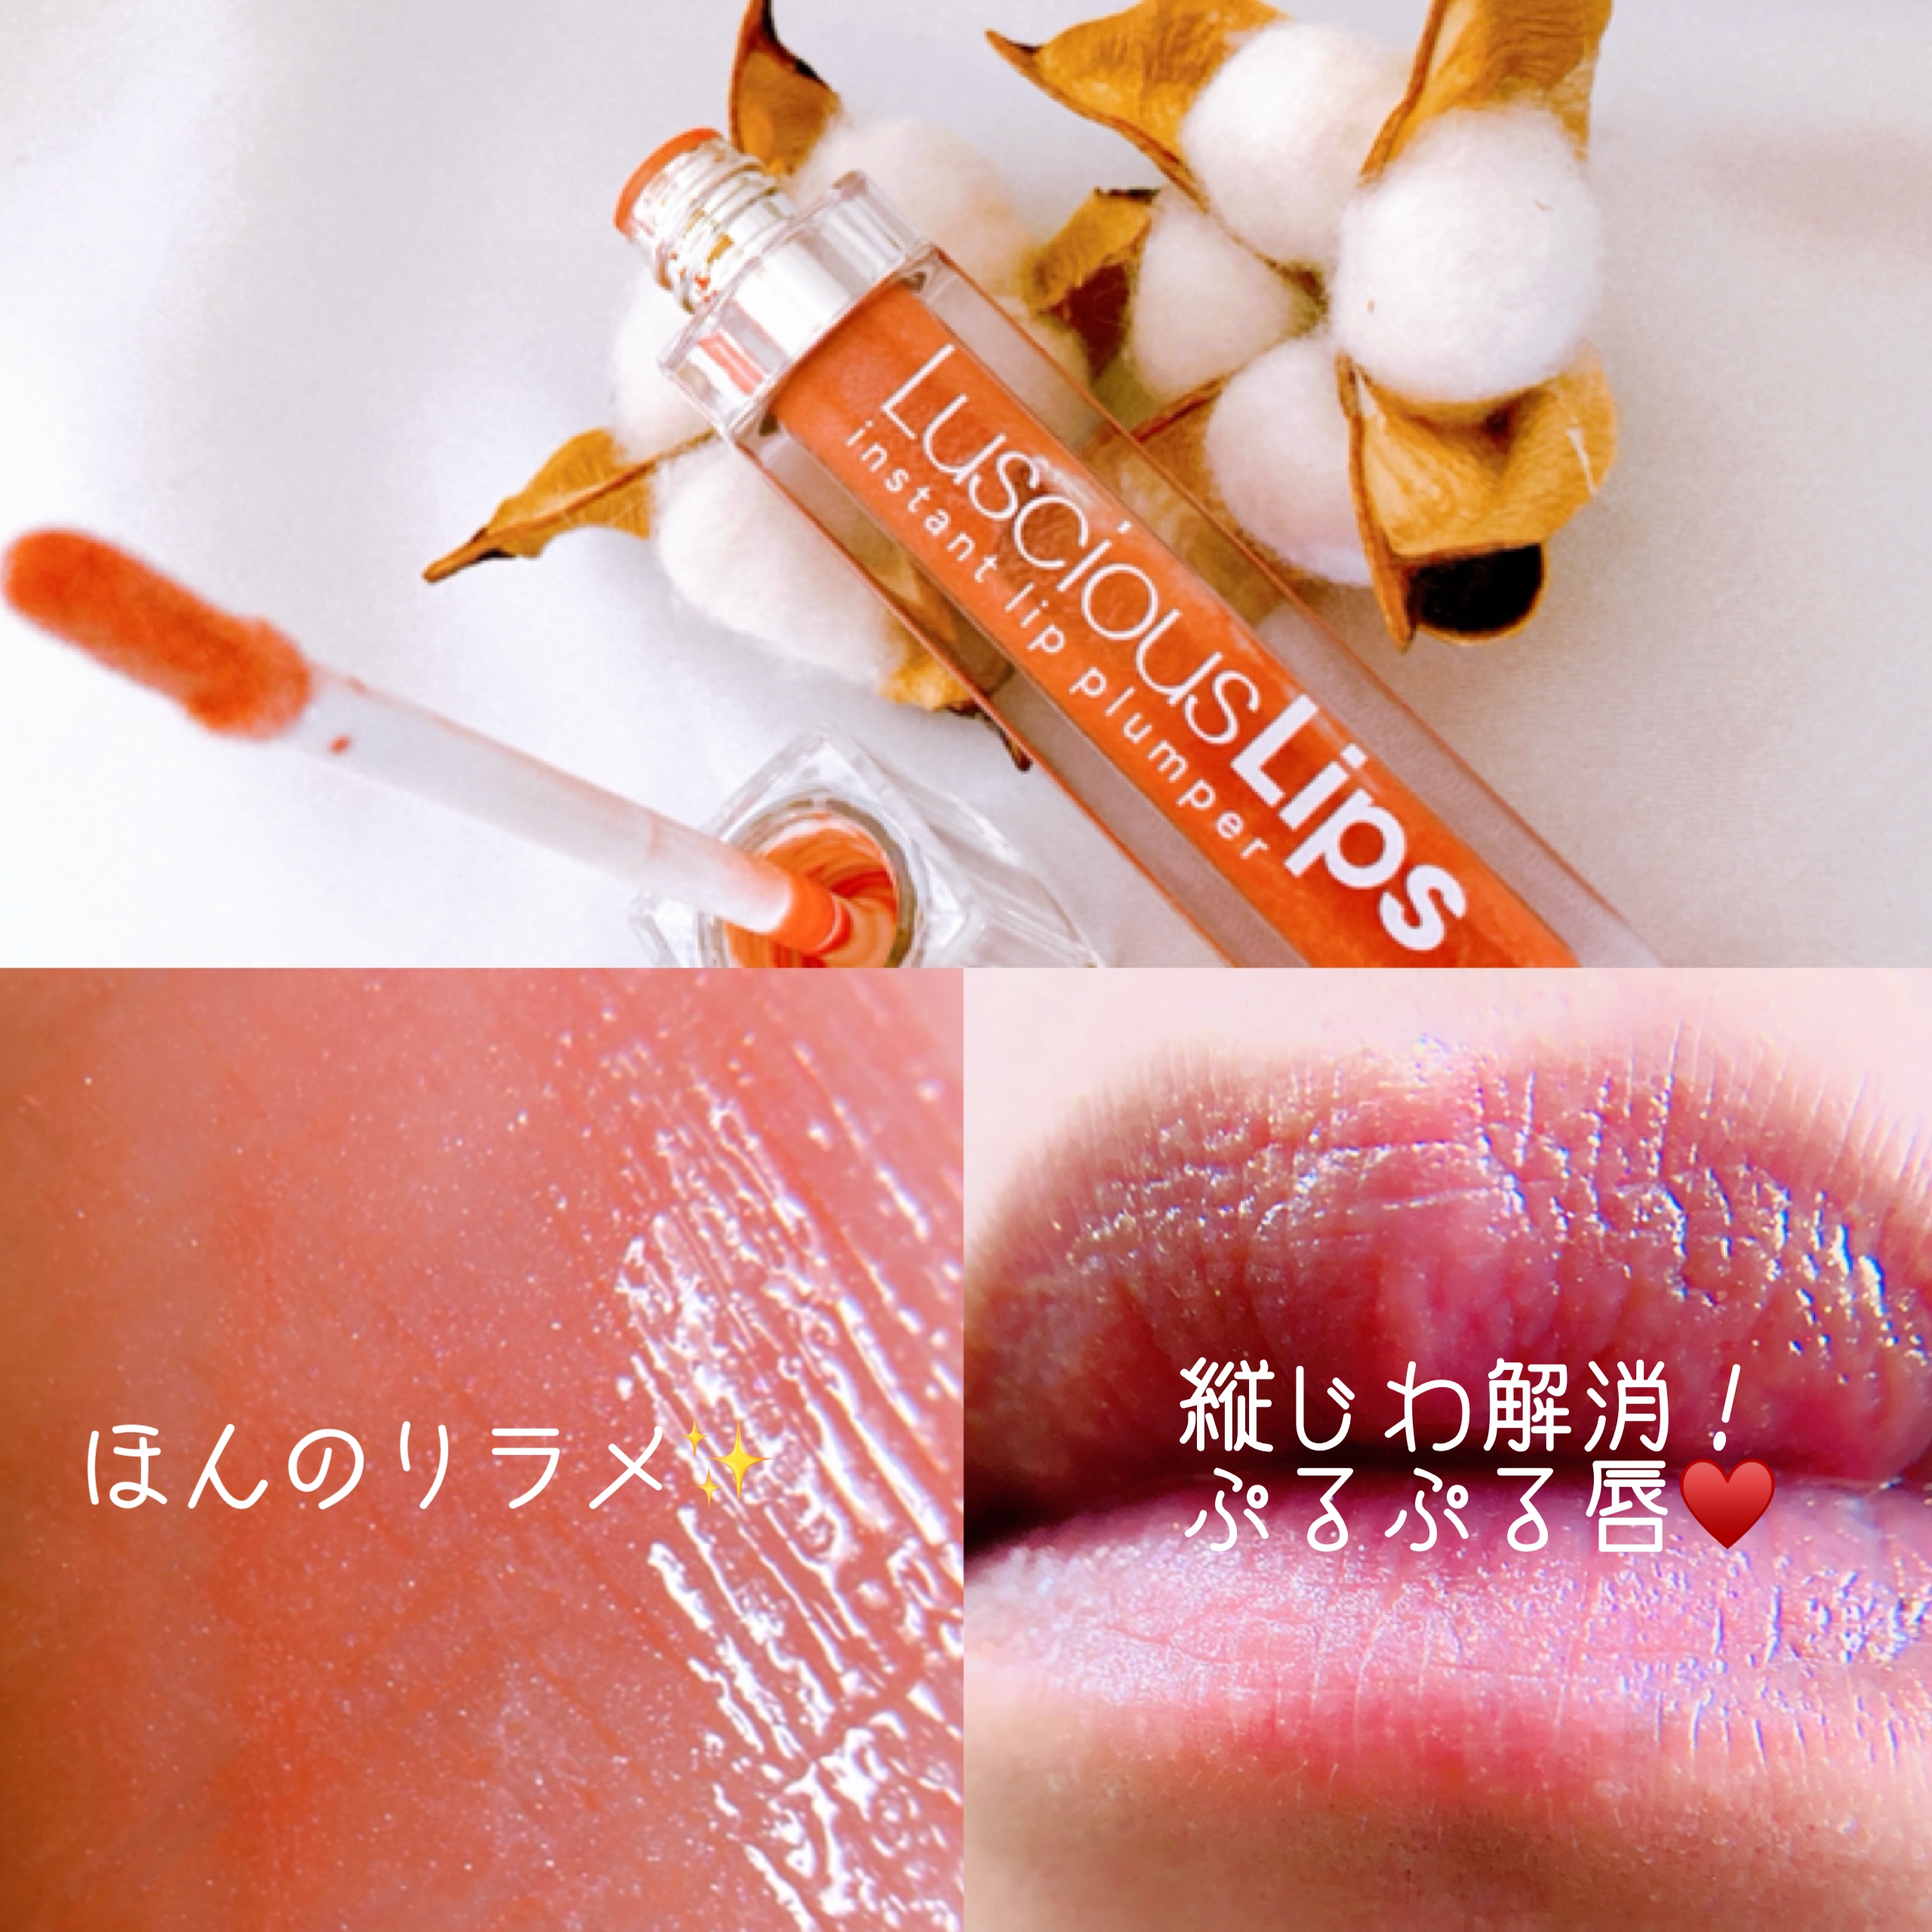 LusciousLips(ラシャスリップス)ラシャスリップス (リップ美容液)を使ったメグさんのクチコミ画像4